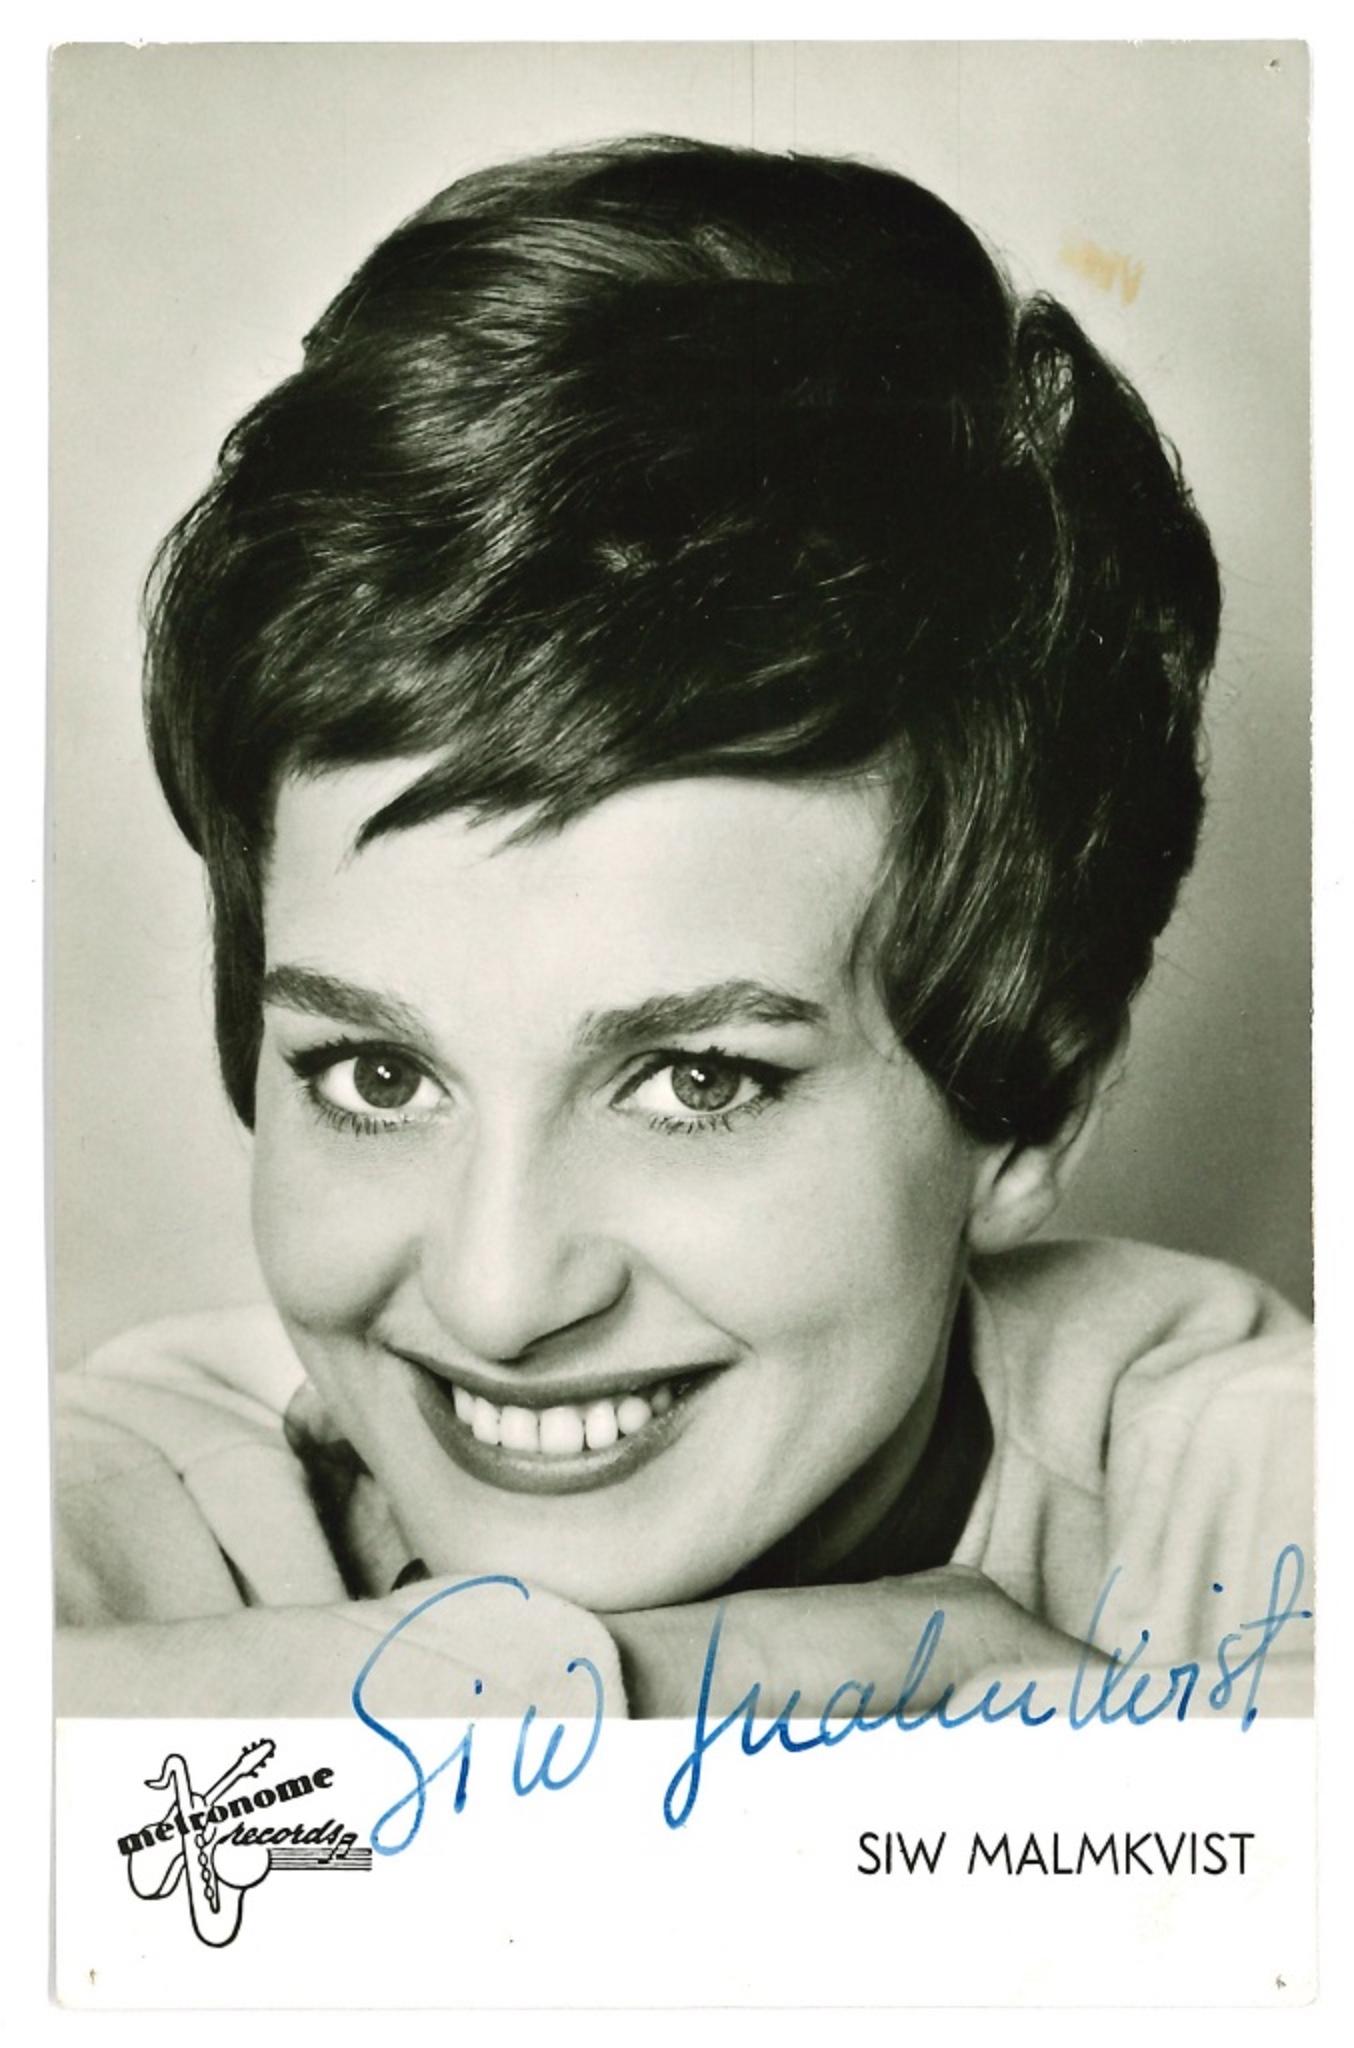 Unknown Portrait Photograph - Autographed Portrait of Siw Malmkvist - 1960s